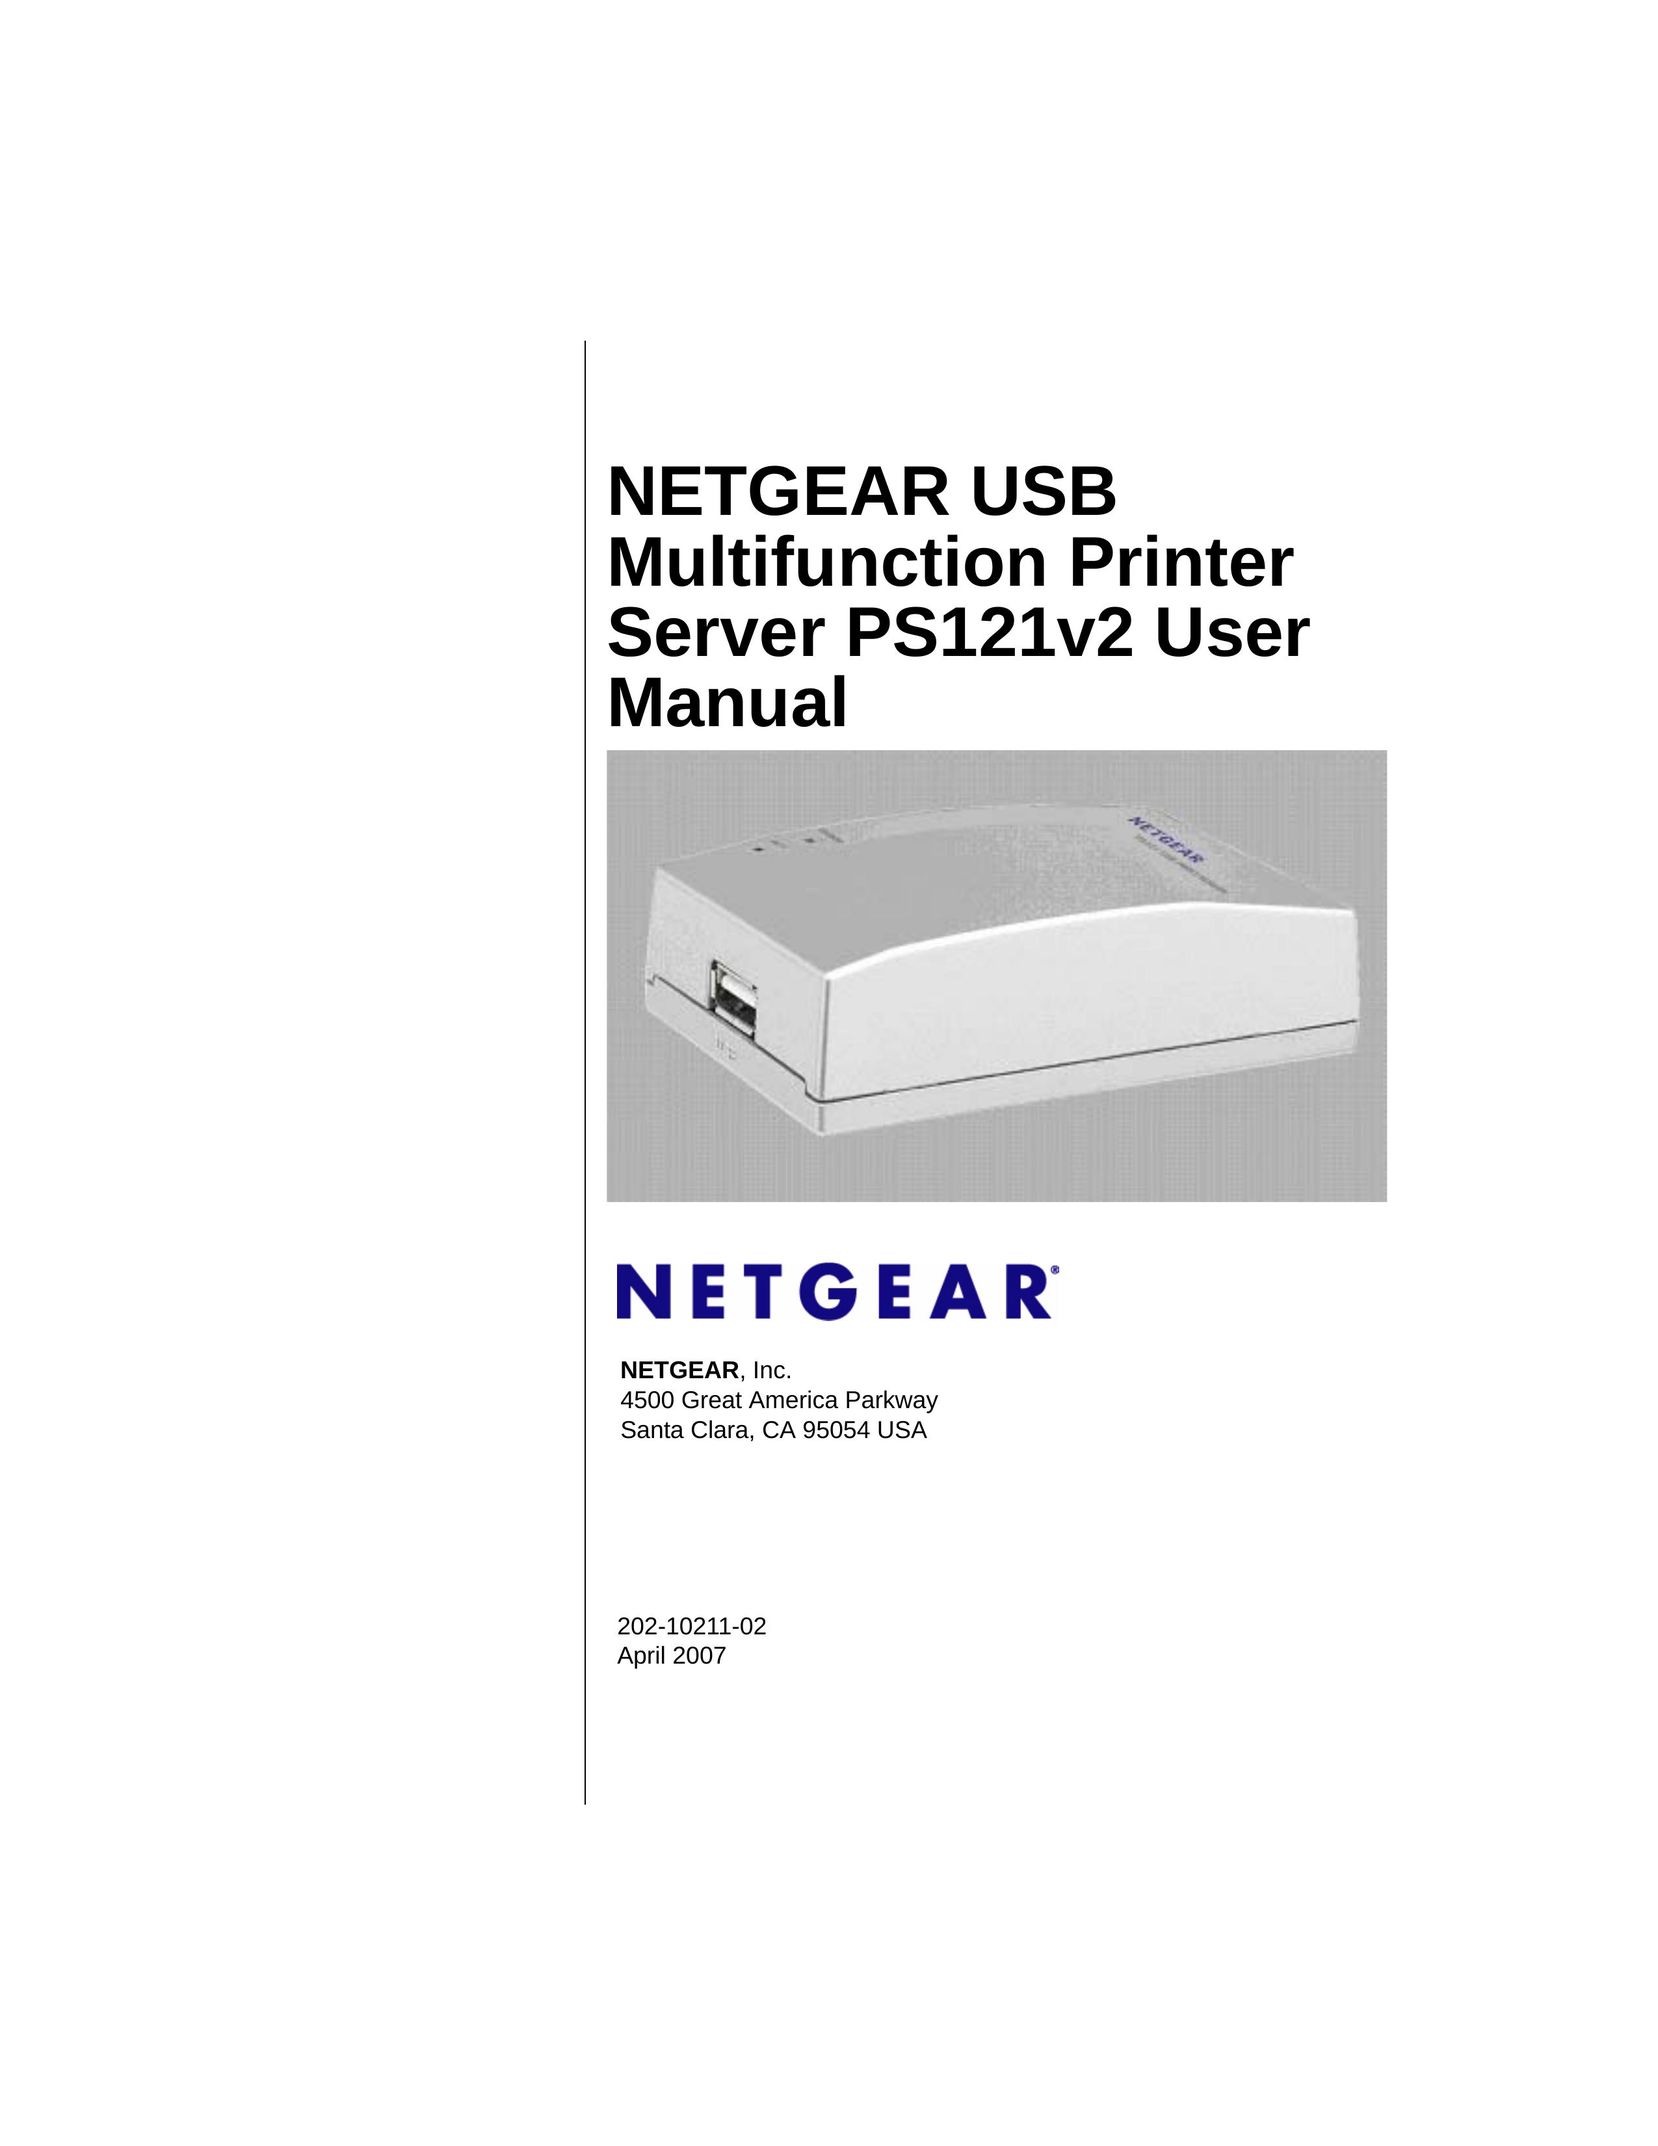 NETGEAR PS121v2 Printer User Manual